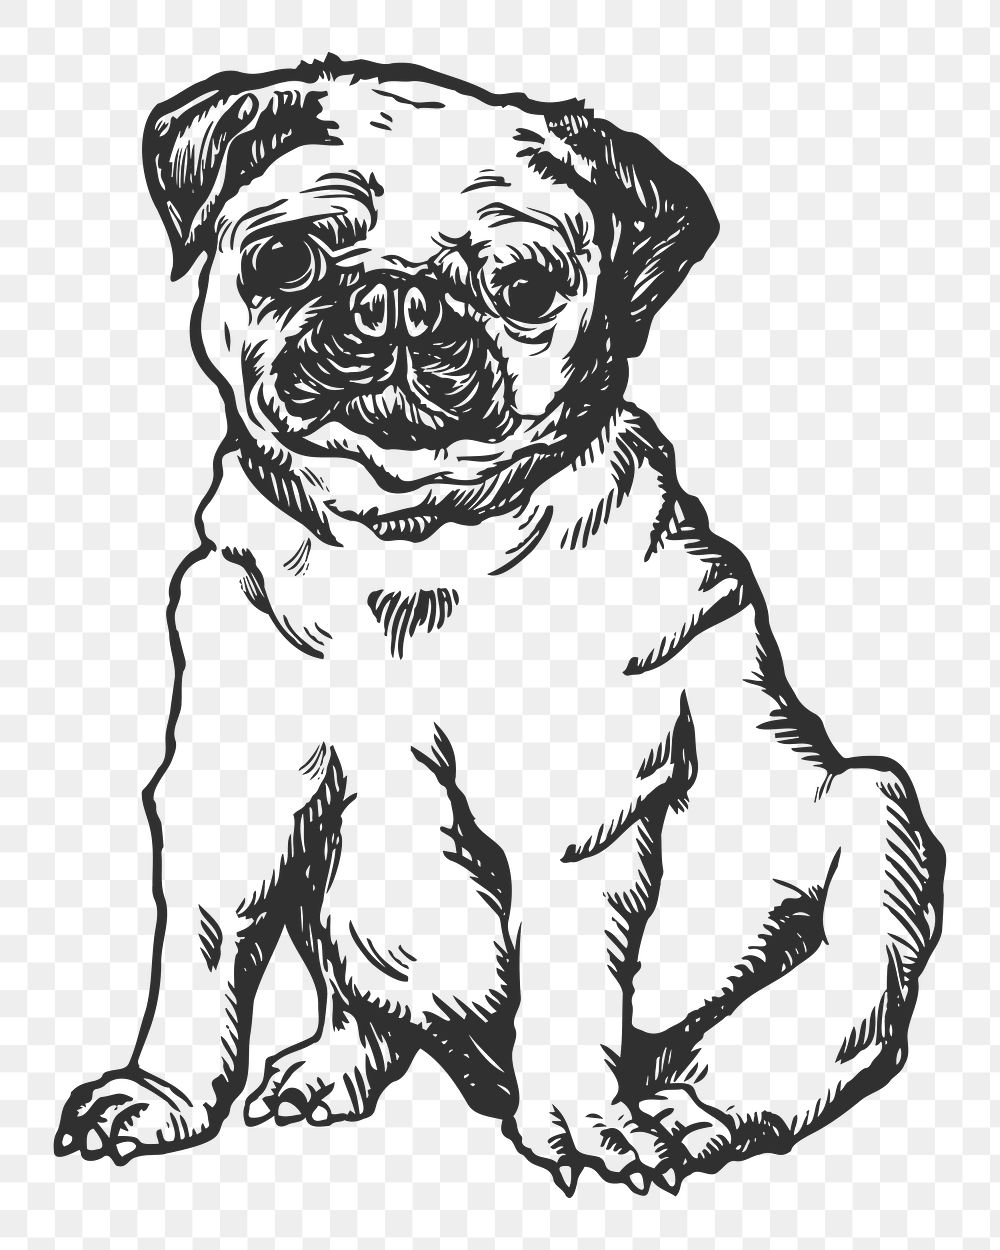 Pug dog png sticker, black & white illustration, transparent background